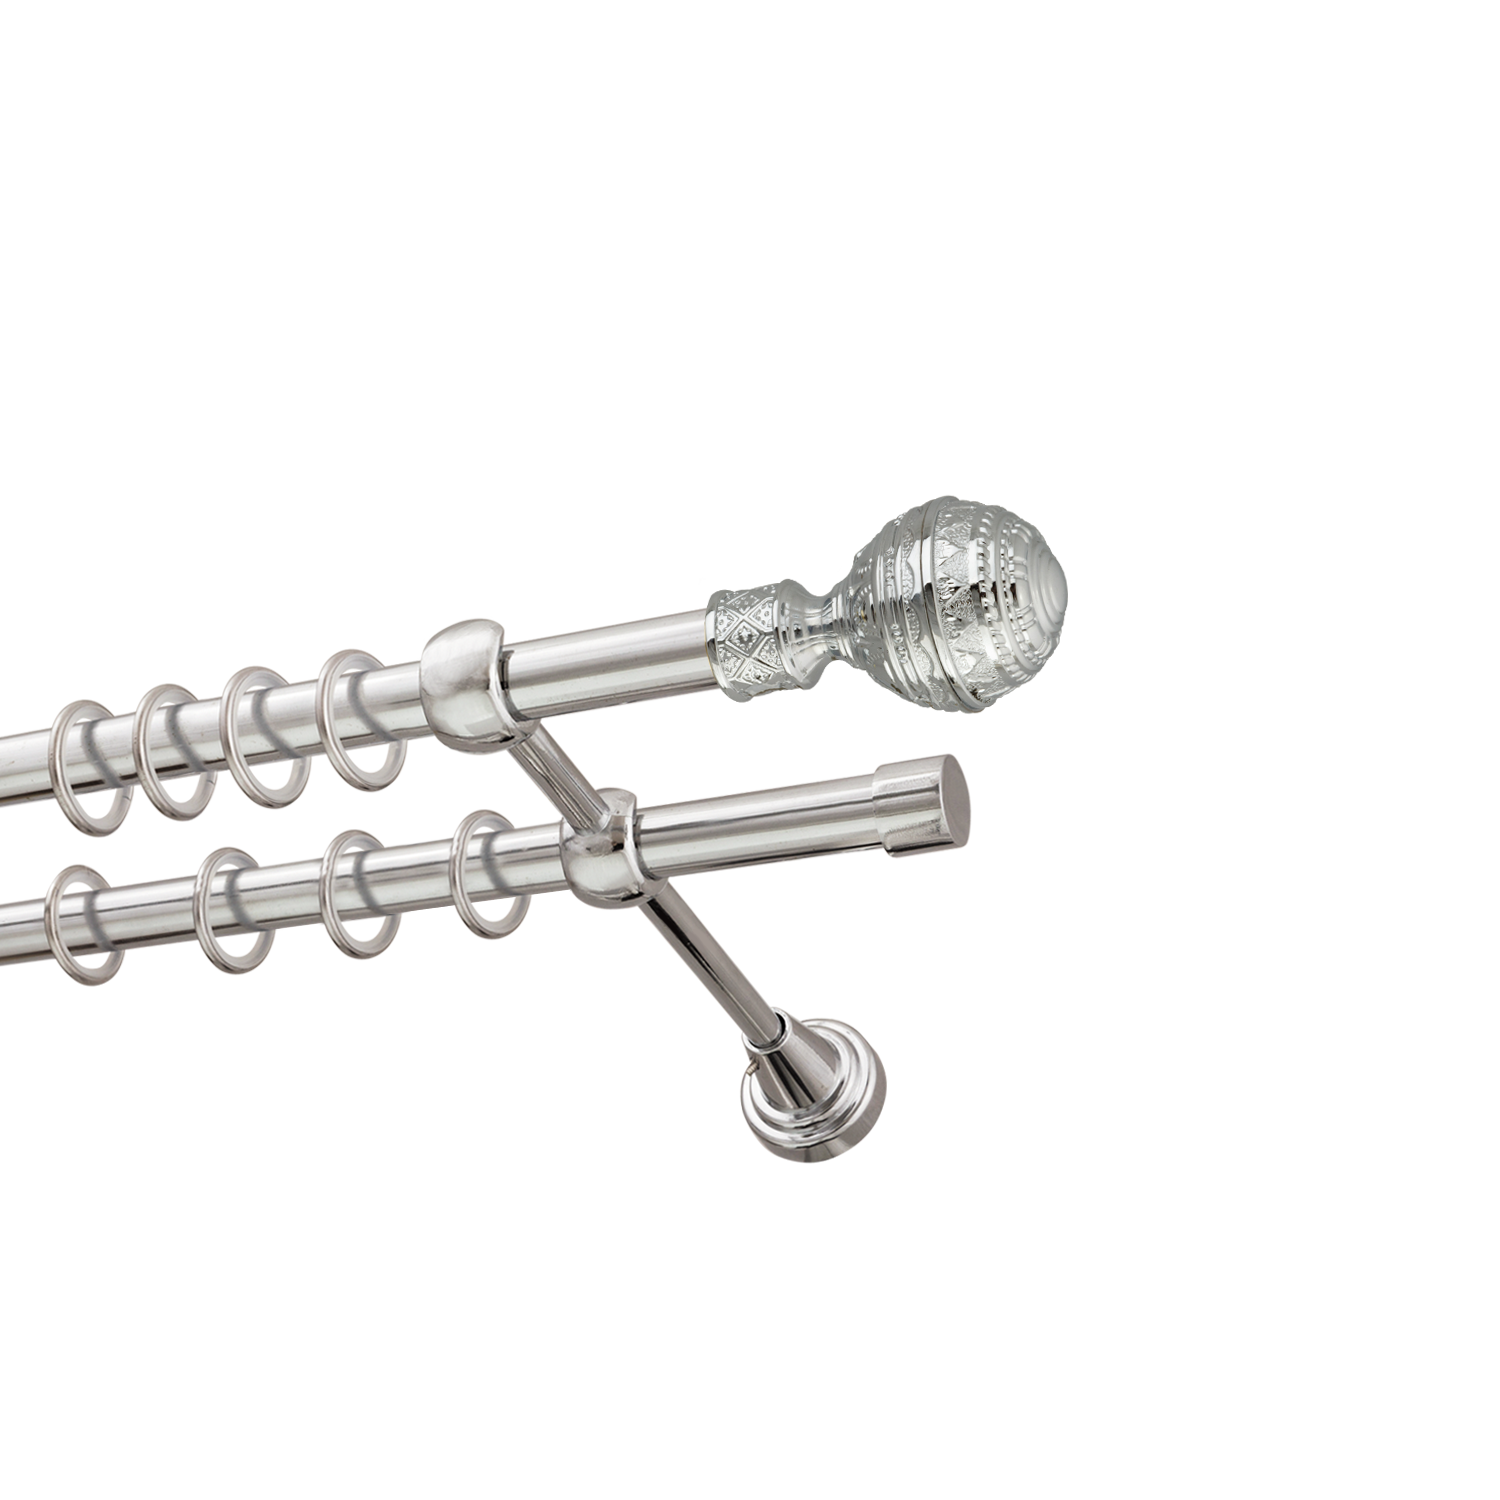 Металлический карниз для штор Роял, двухрядный 16/16 мм, серебро, гладкая штанга, длина 200 см